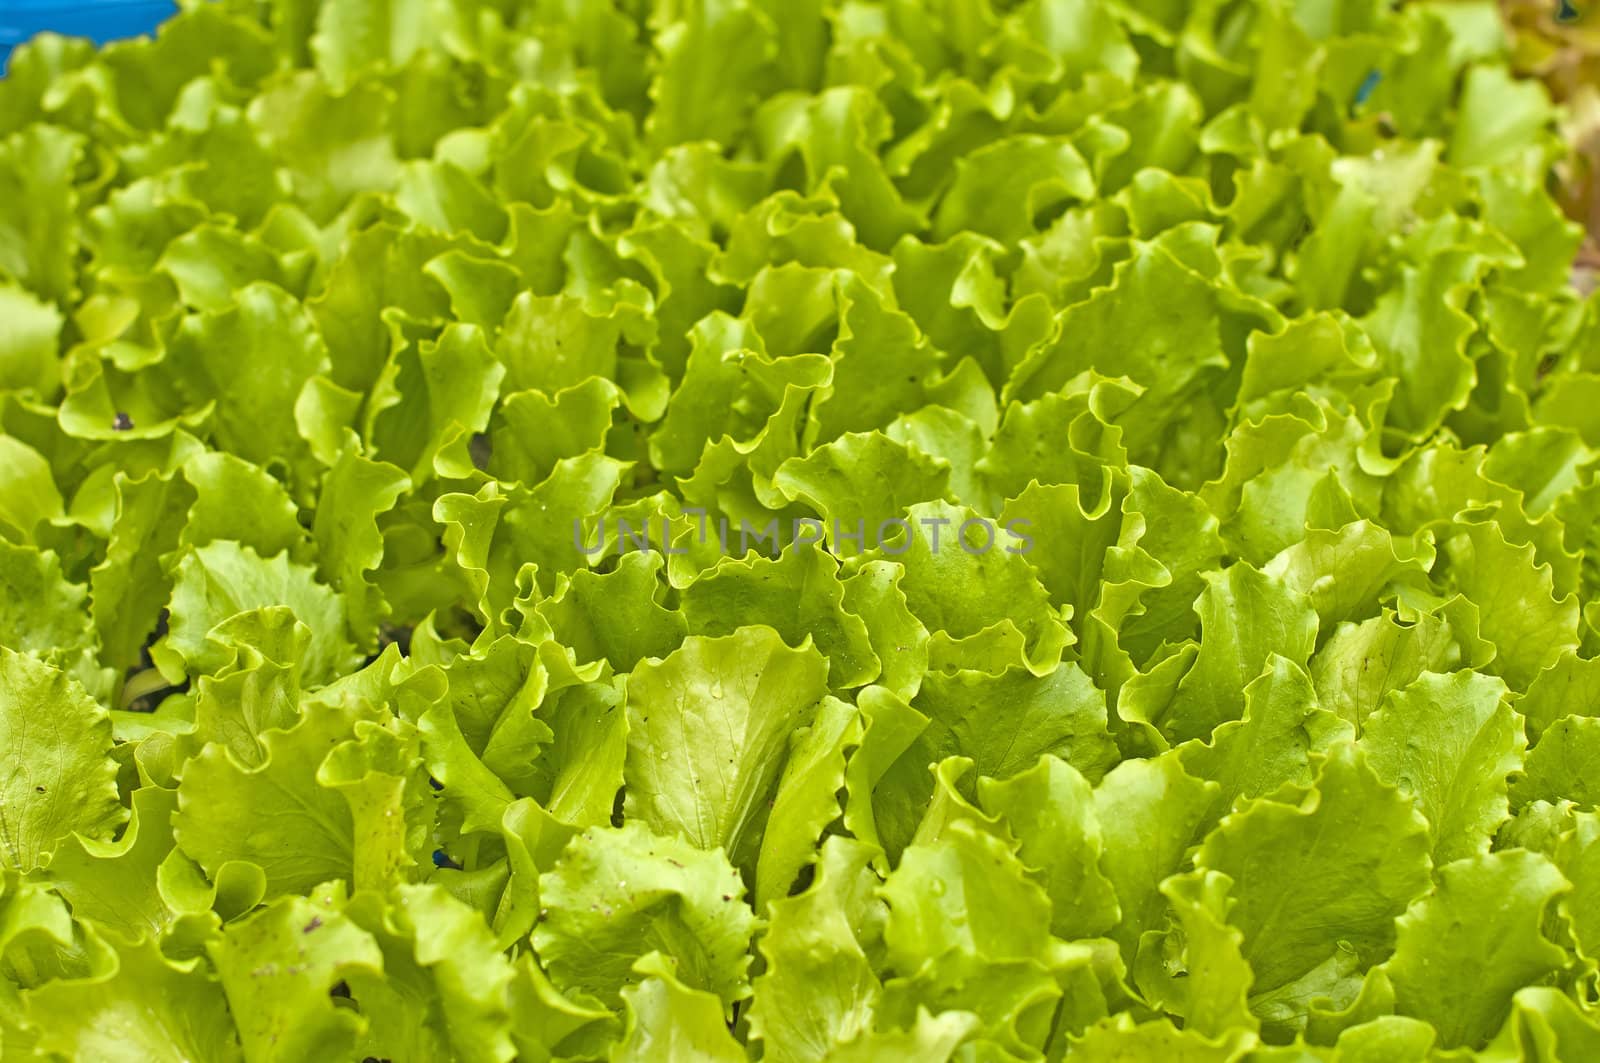 seedlings of salad